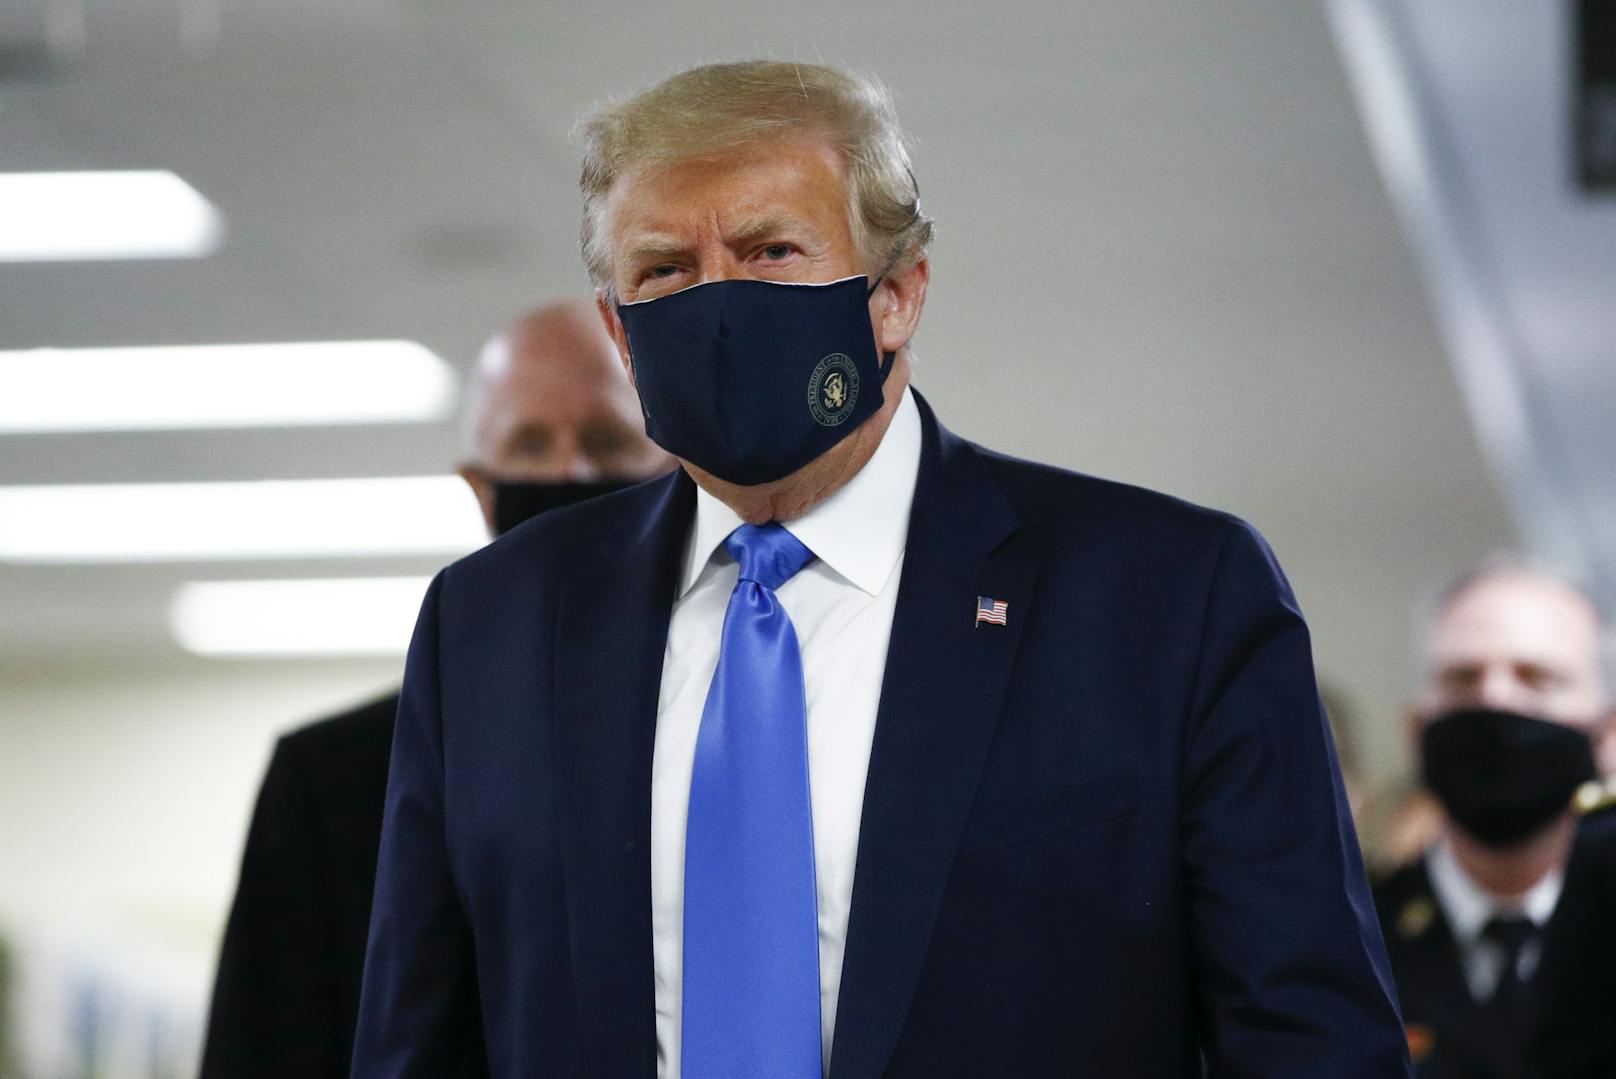 Beim Besuch eines Militärkrankenhauses bei Washington hat US-Präsident Donald Trump erstmals bei einem öffentlichen Auftritt eine Maske getragen.